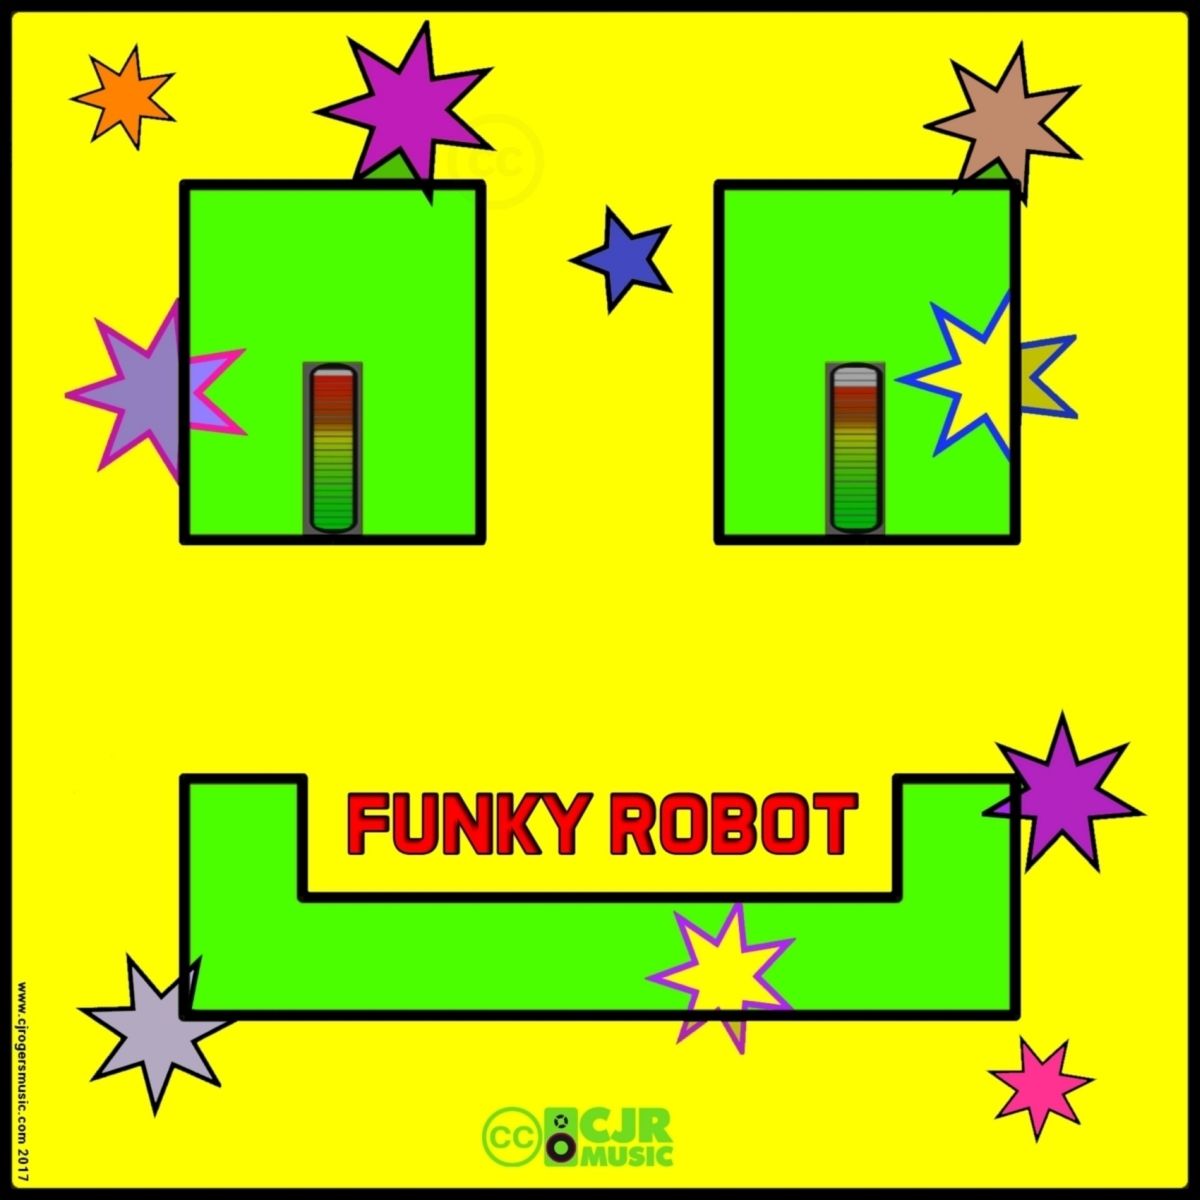 Funky Robot - Fullsize Cover Art